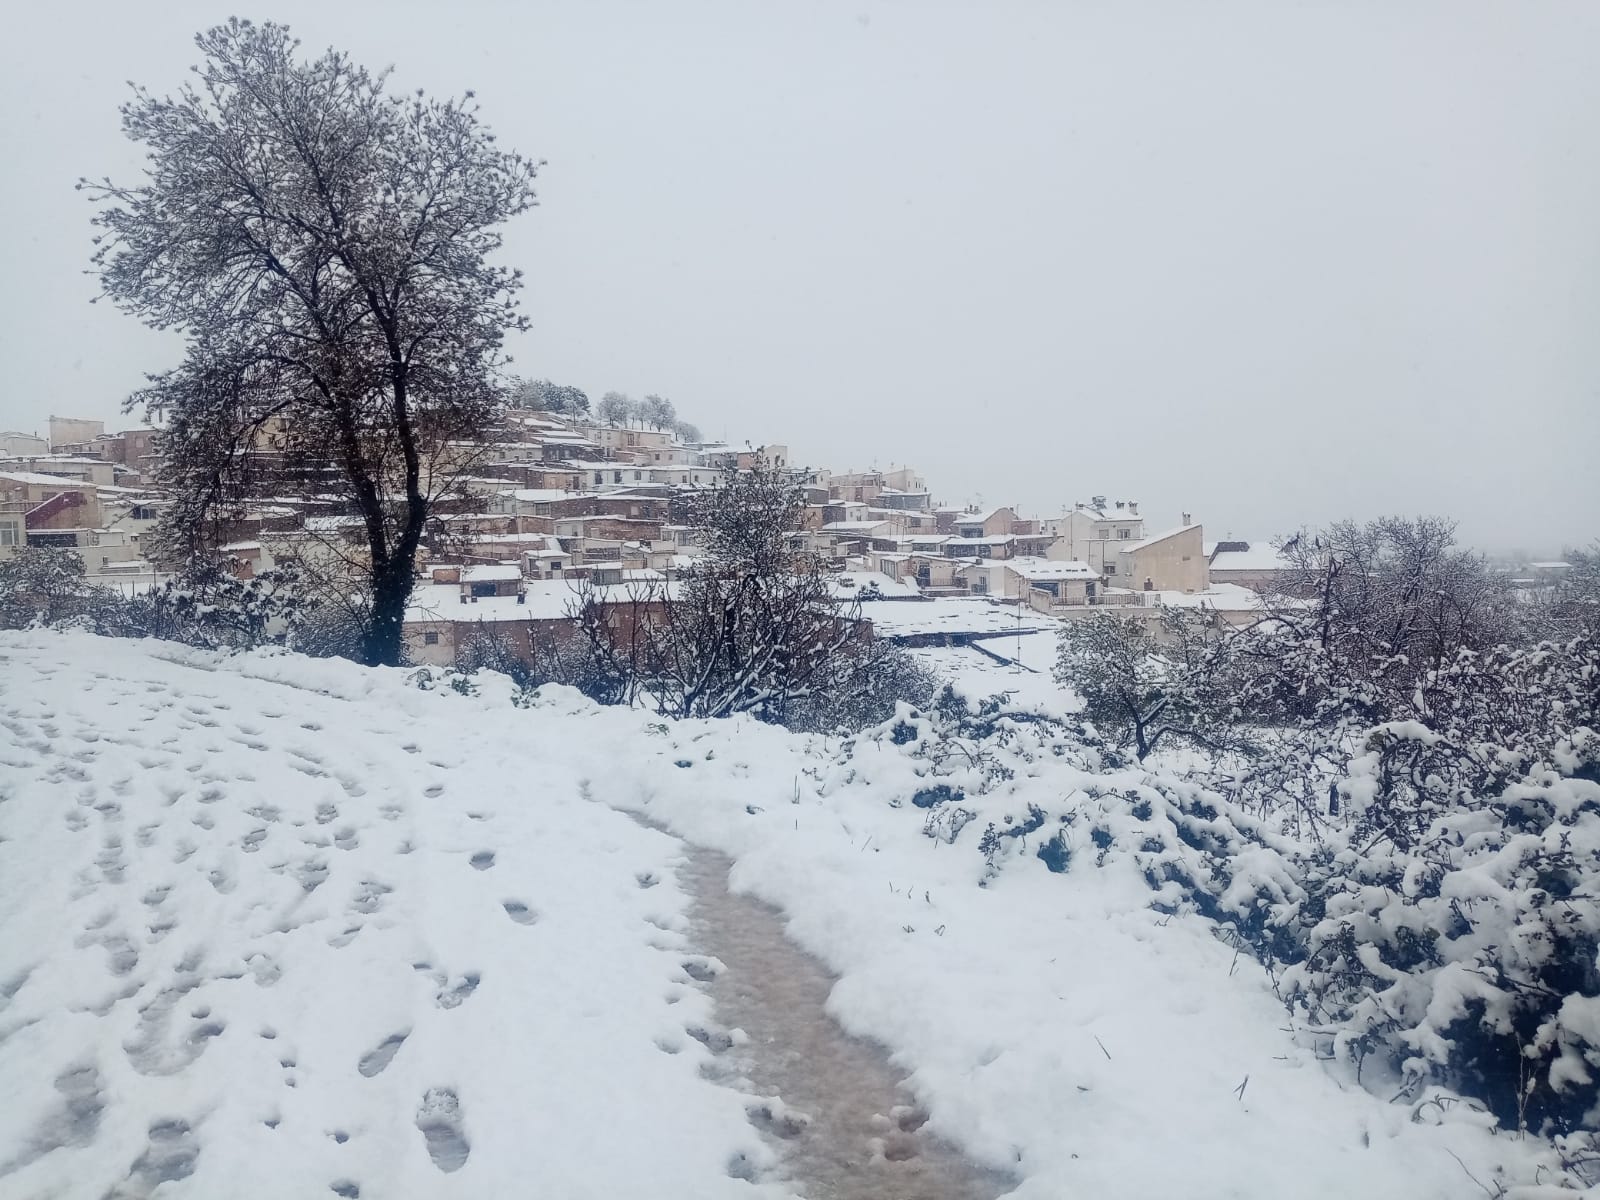 Imagen principal - Nieve en el Marquesado de Zenete